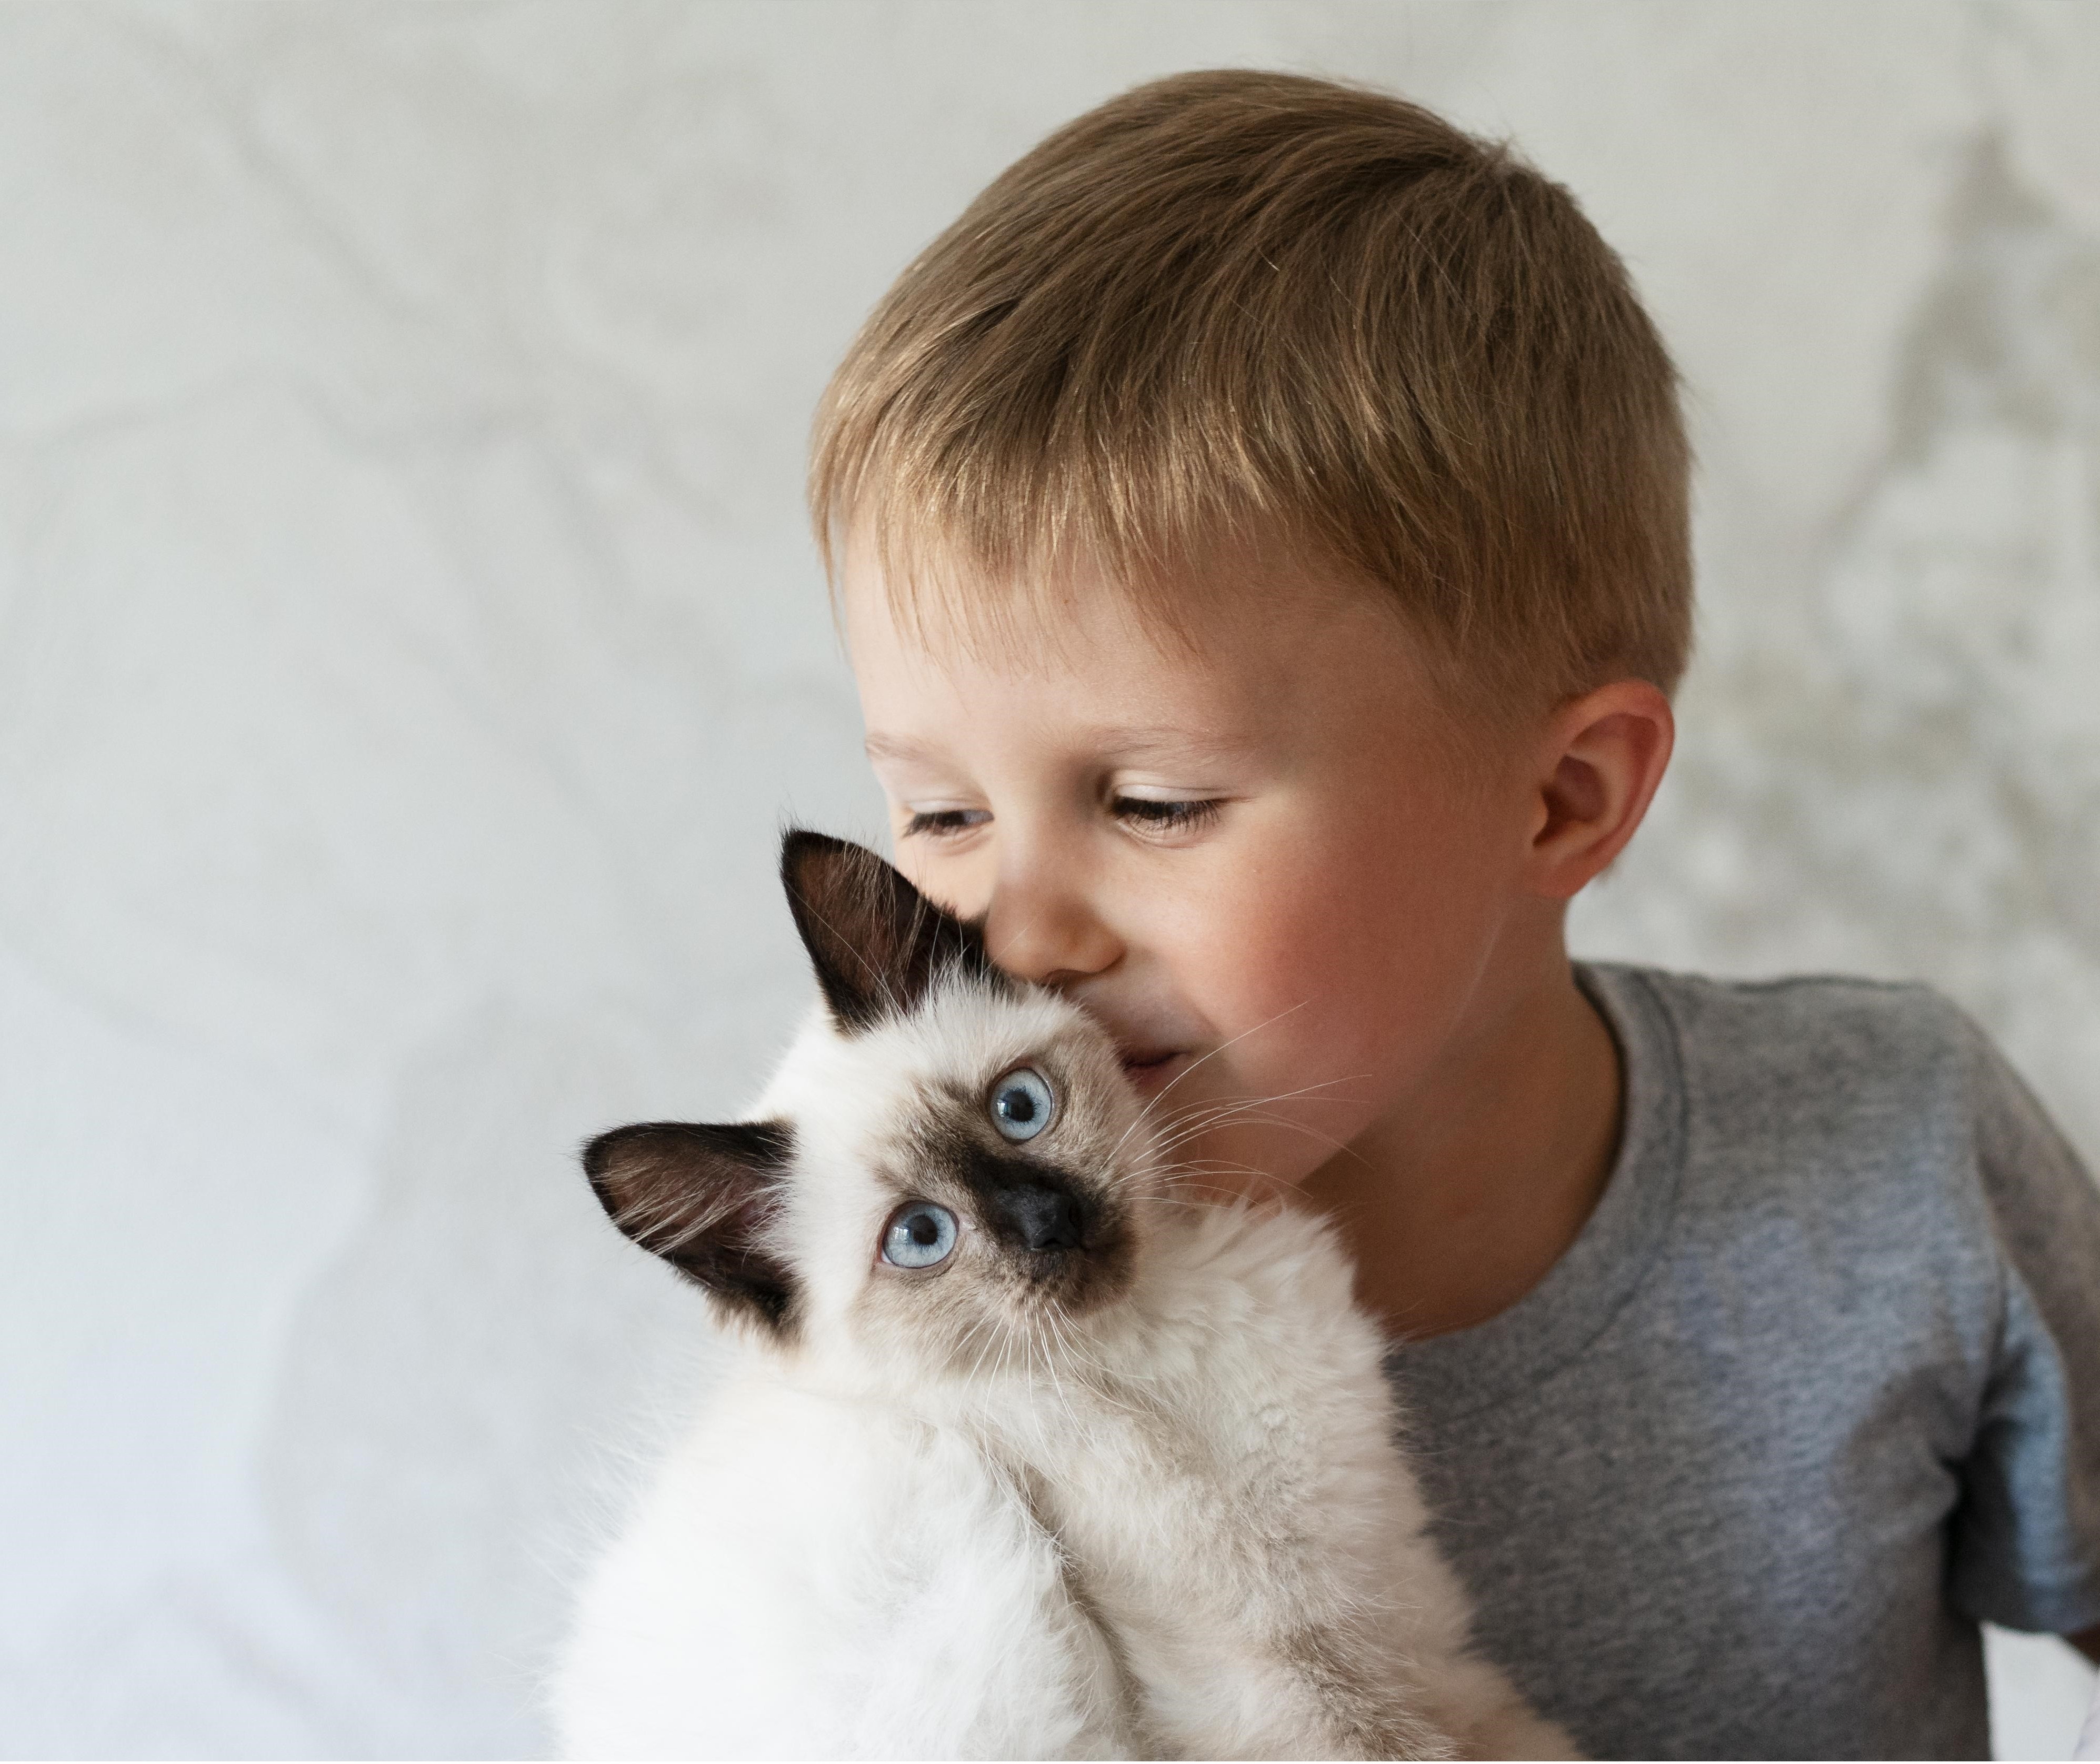 Imunoterapia é o melhor tratamento para crianças que têm alergias a pets